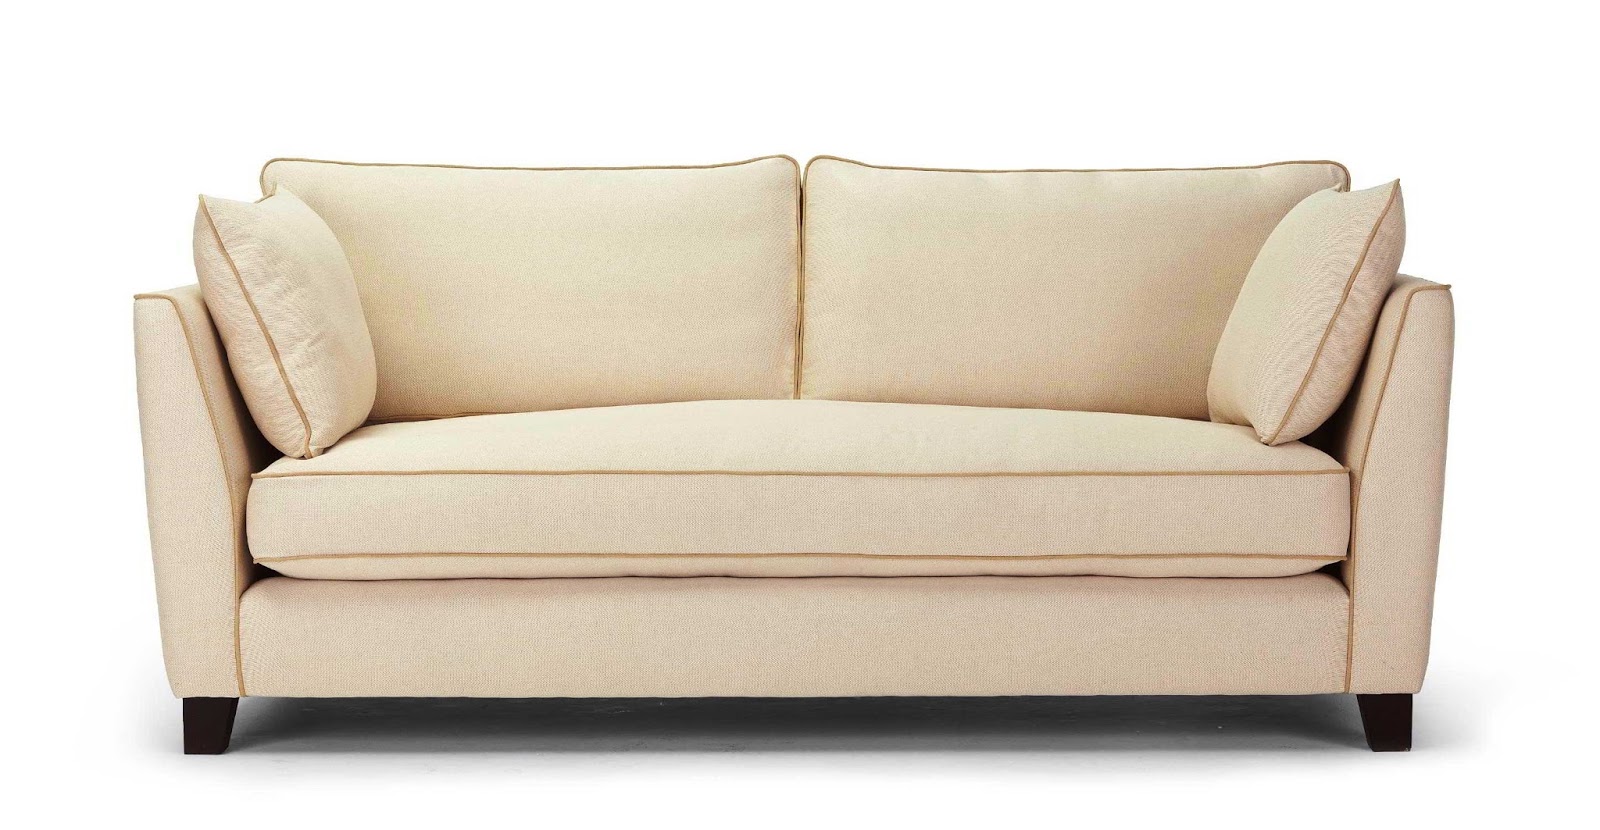  Model  Sofa  Ruang  Tv Minimalis Desain Rumah